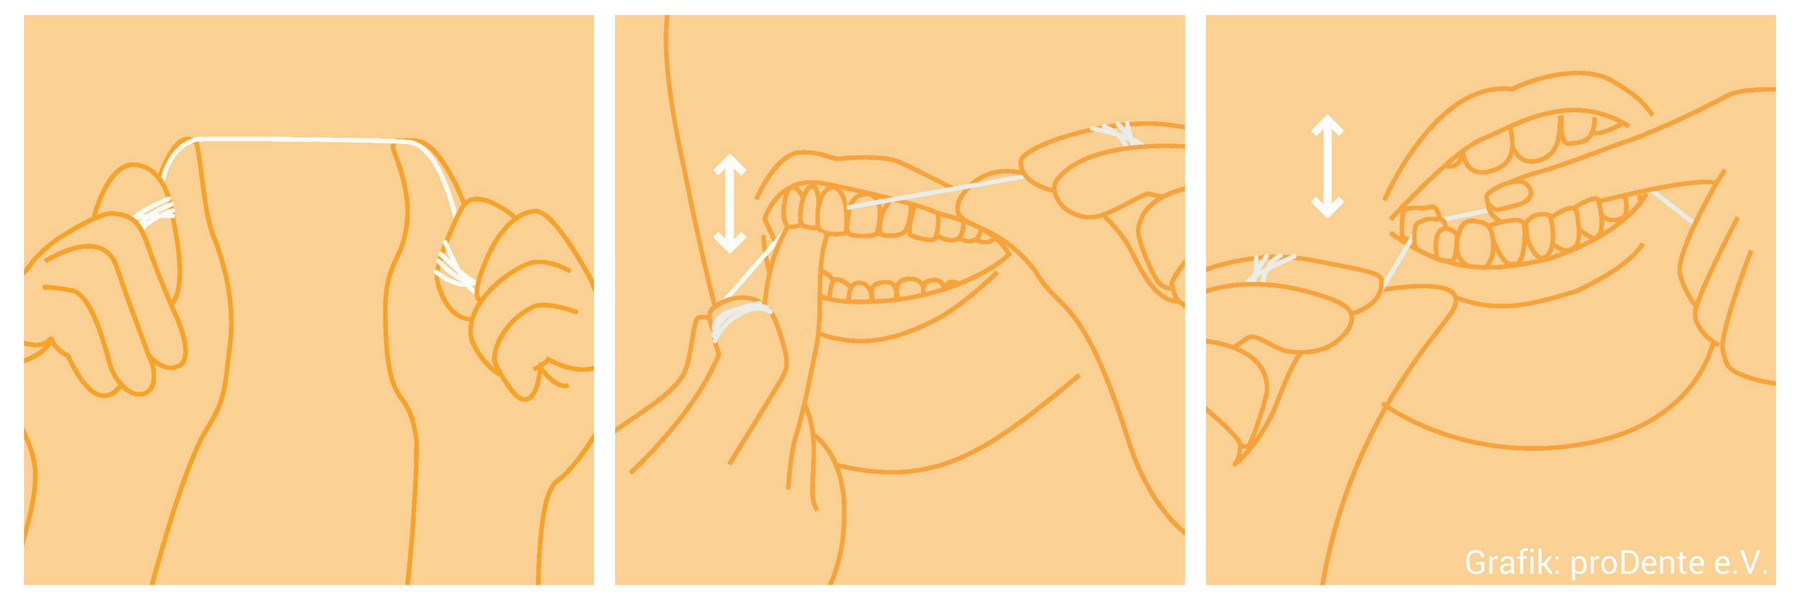 Die Grafik von Prodente e. V. zeigt die Nutzung von Zahnseide.